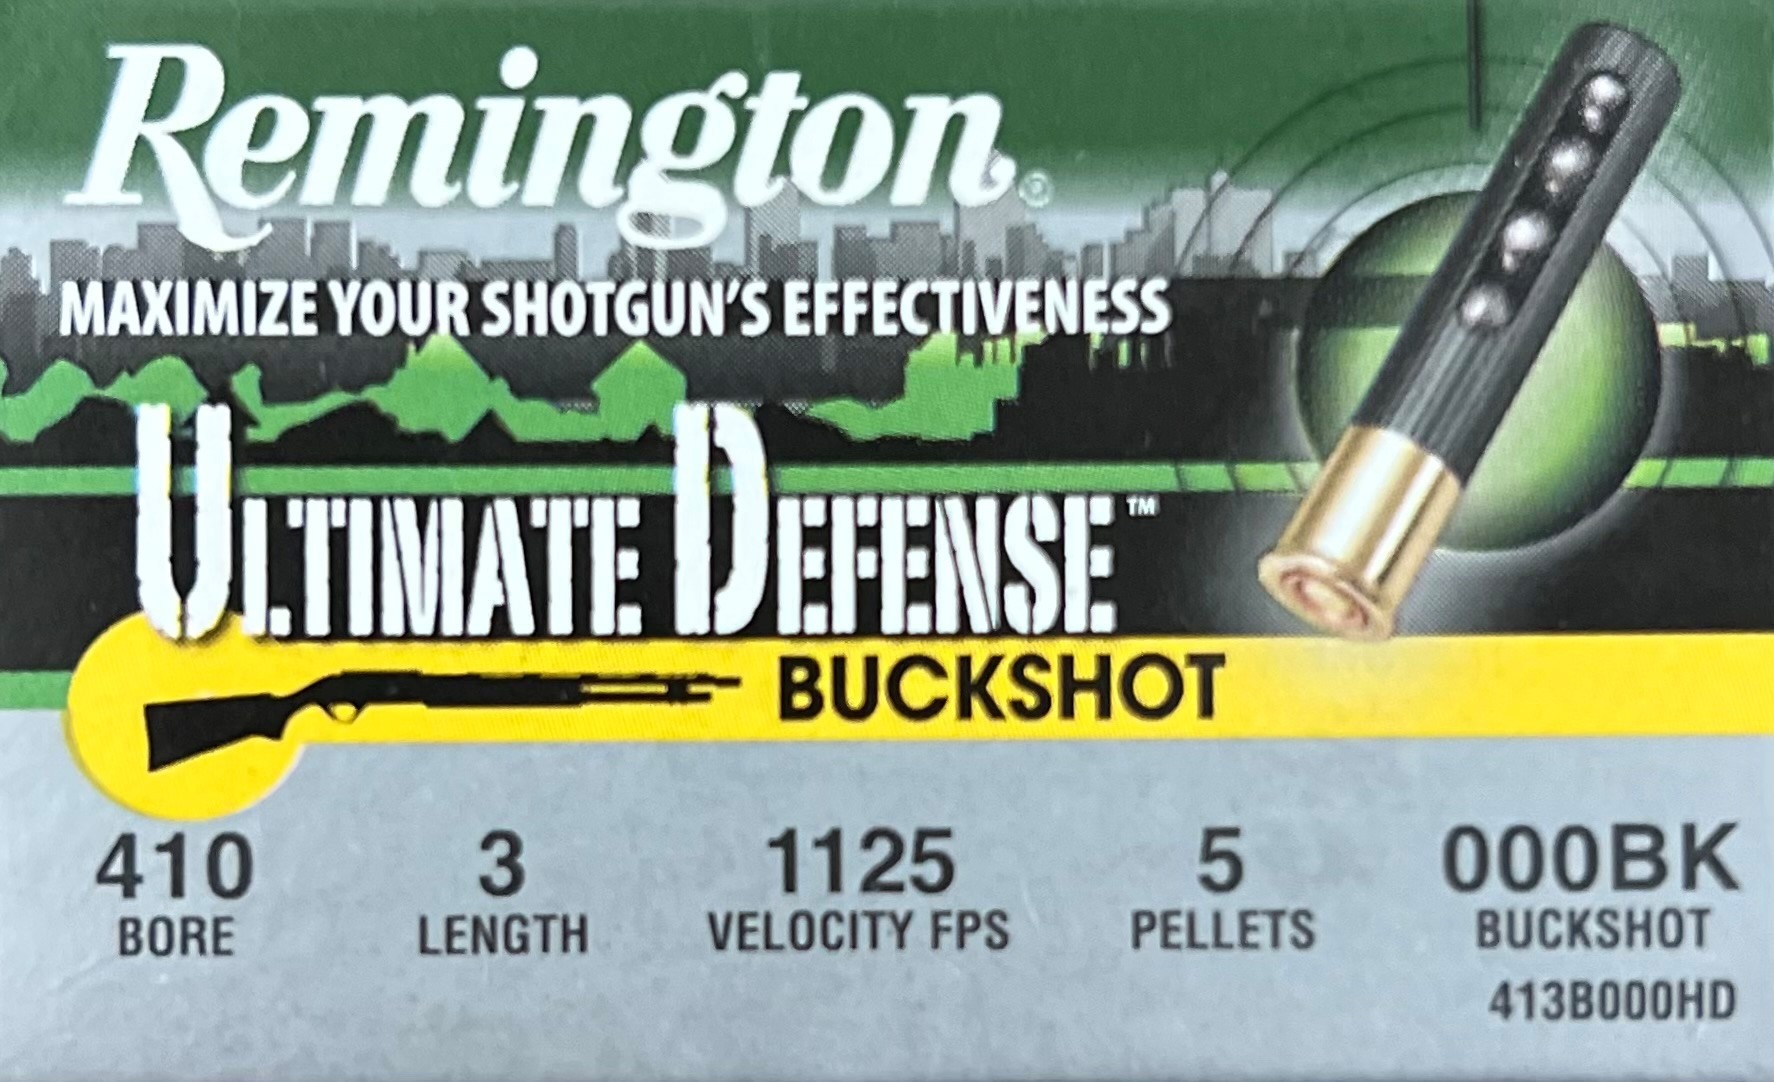 Remington 410 Bore Ultimate Defense 000